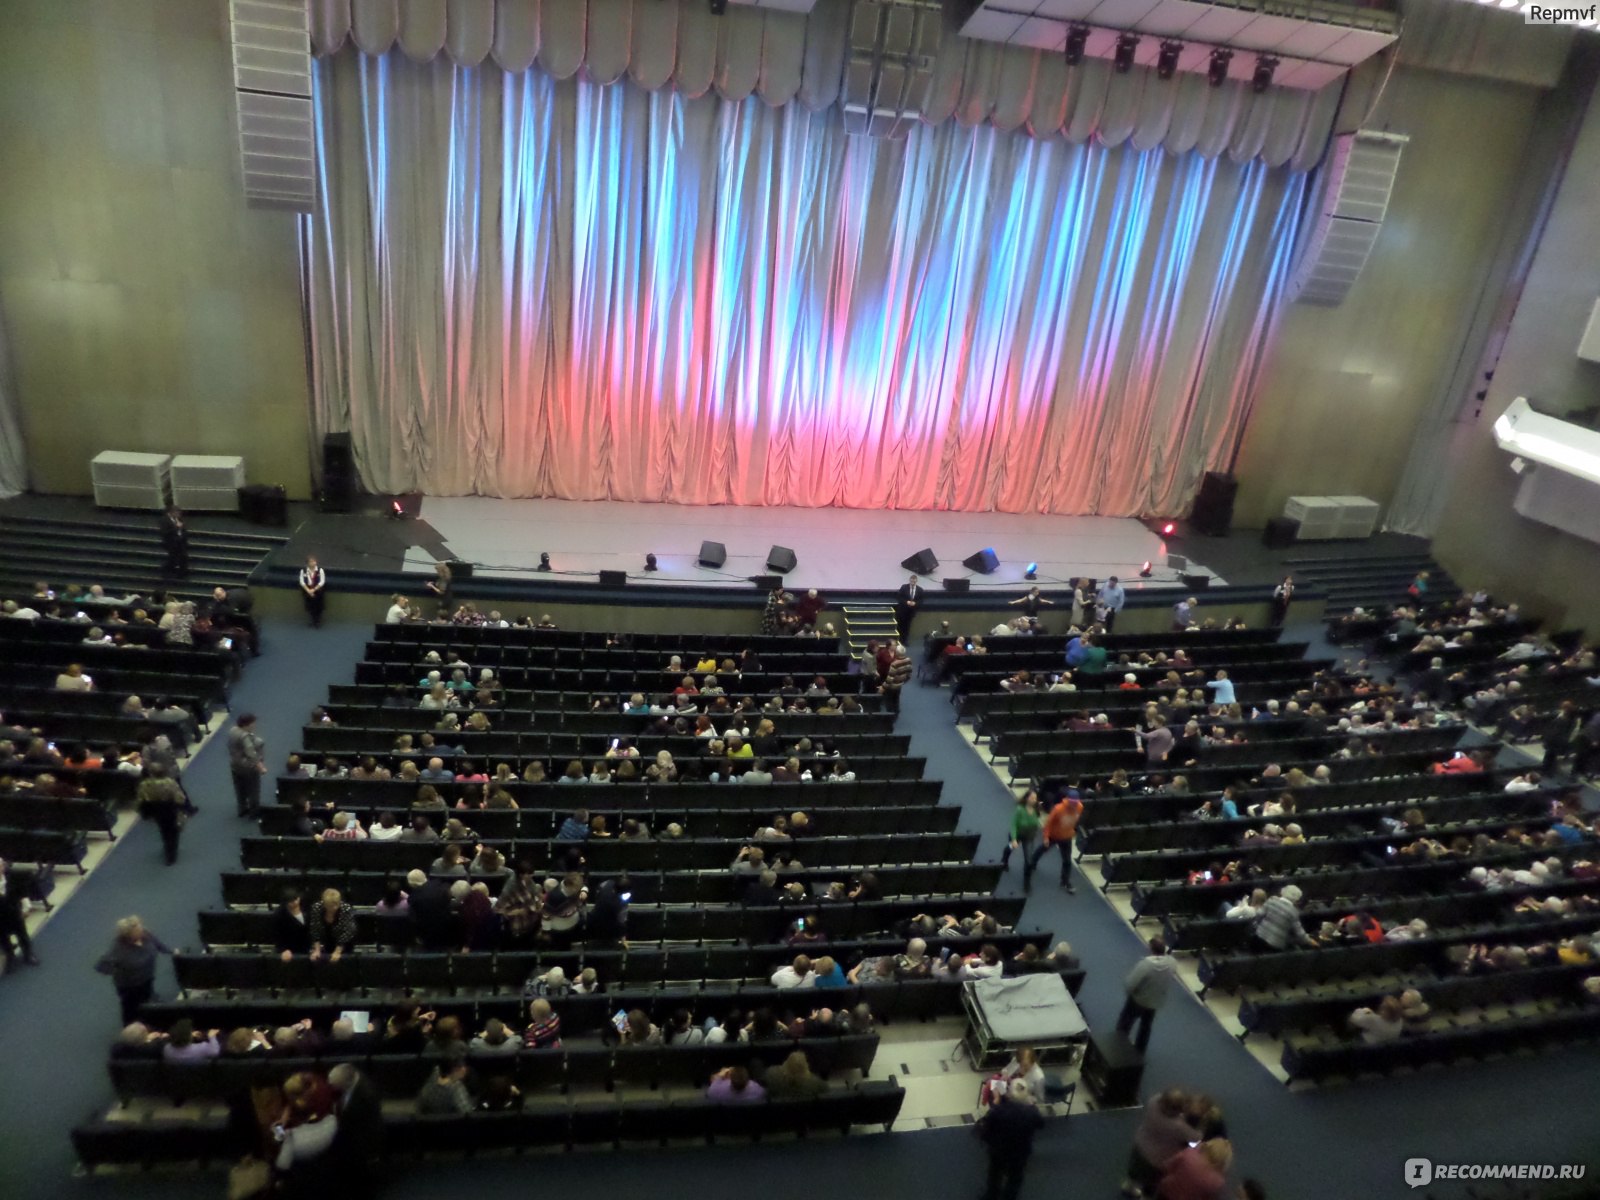 Большой концертный зал Октябрьский, Санкт-Петербург - « Ностальгия по социализму ! Хорошие концерты в советском здании.»